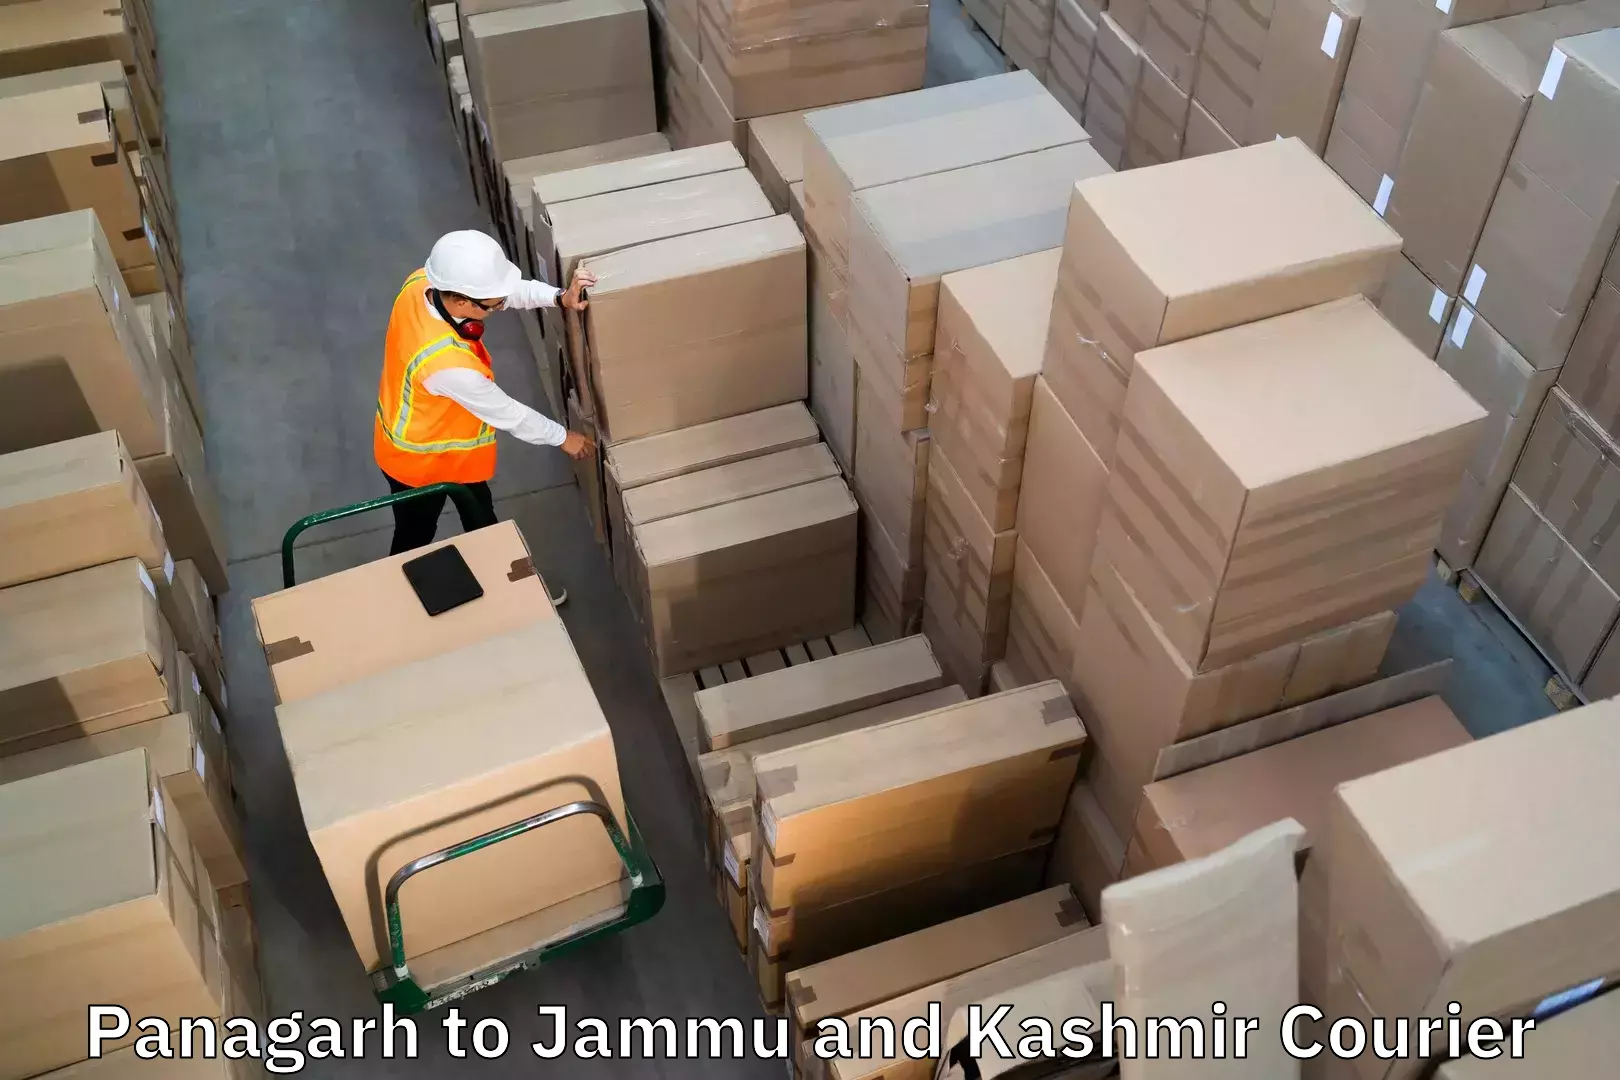 Baggage shipping calculator Panagarh to Srinagar Kashmir